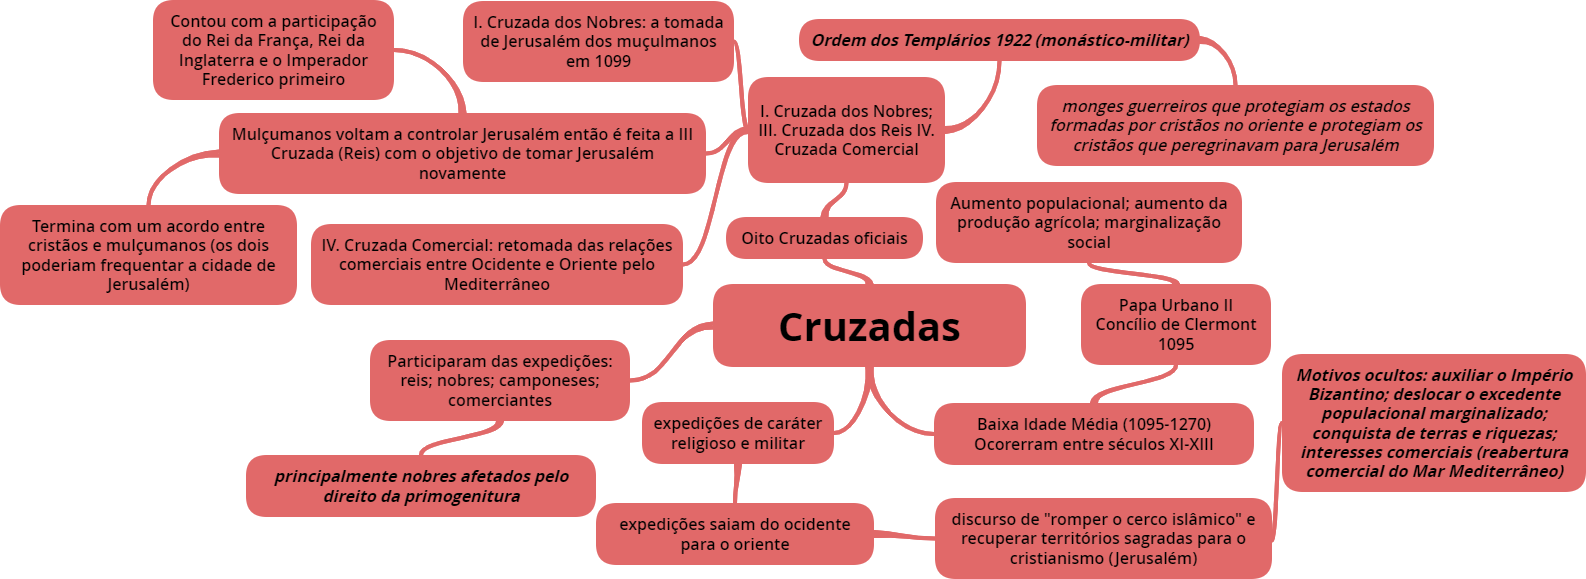 Mapas Mentais sobre CRUZADAS - Study Maps